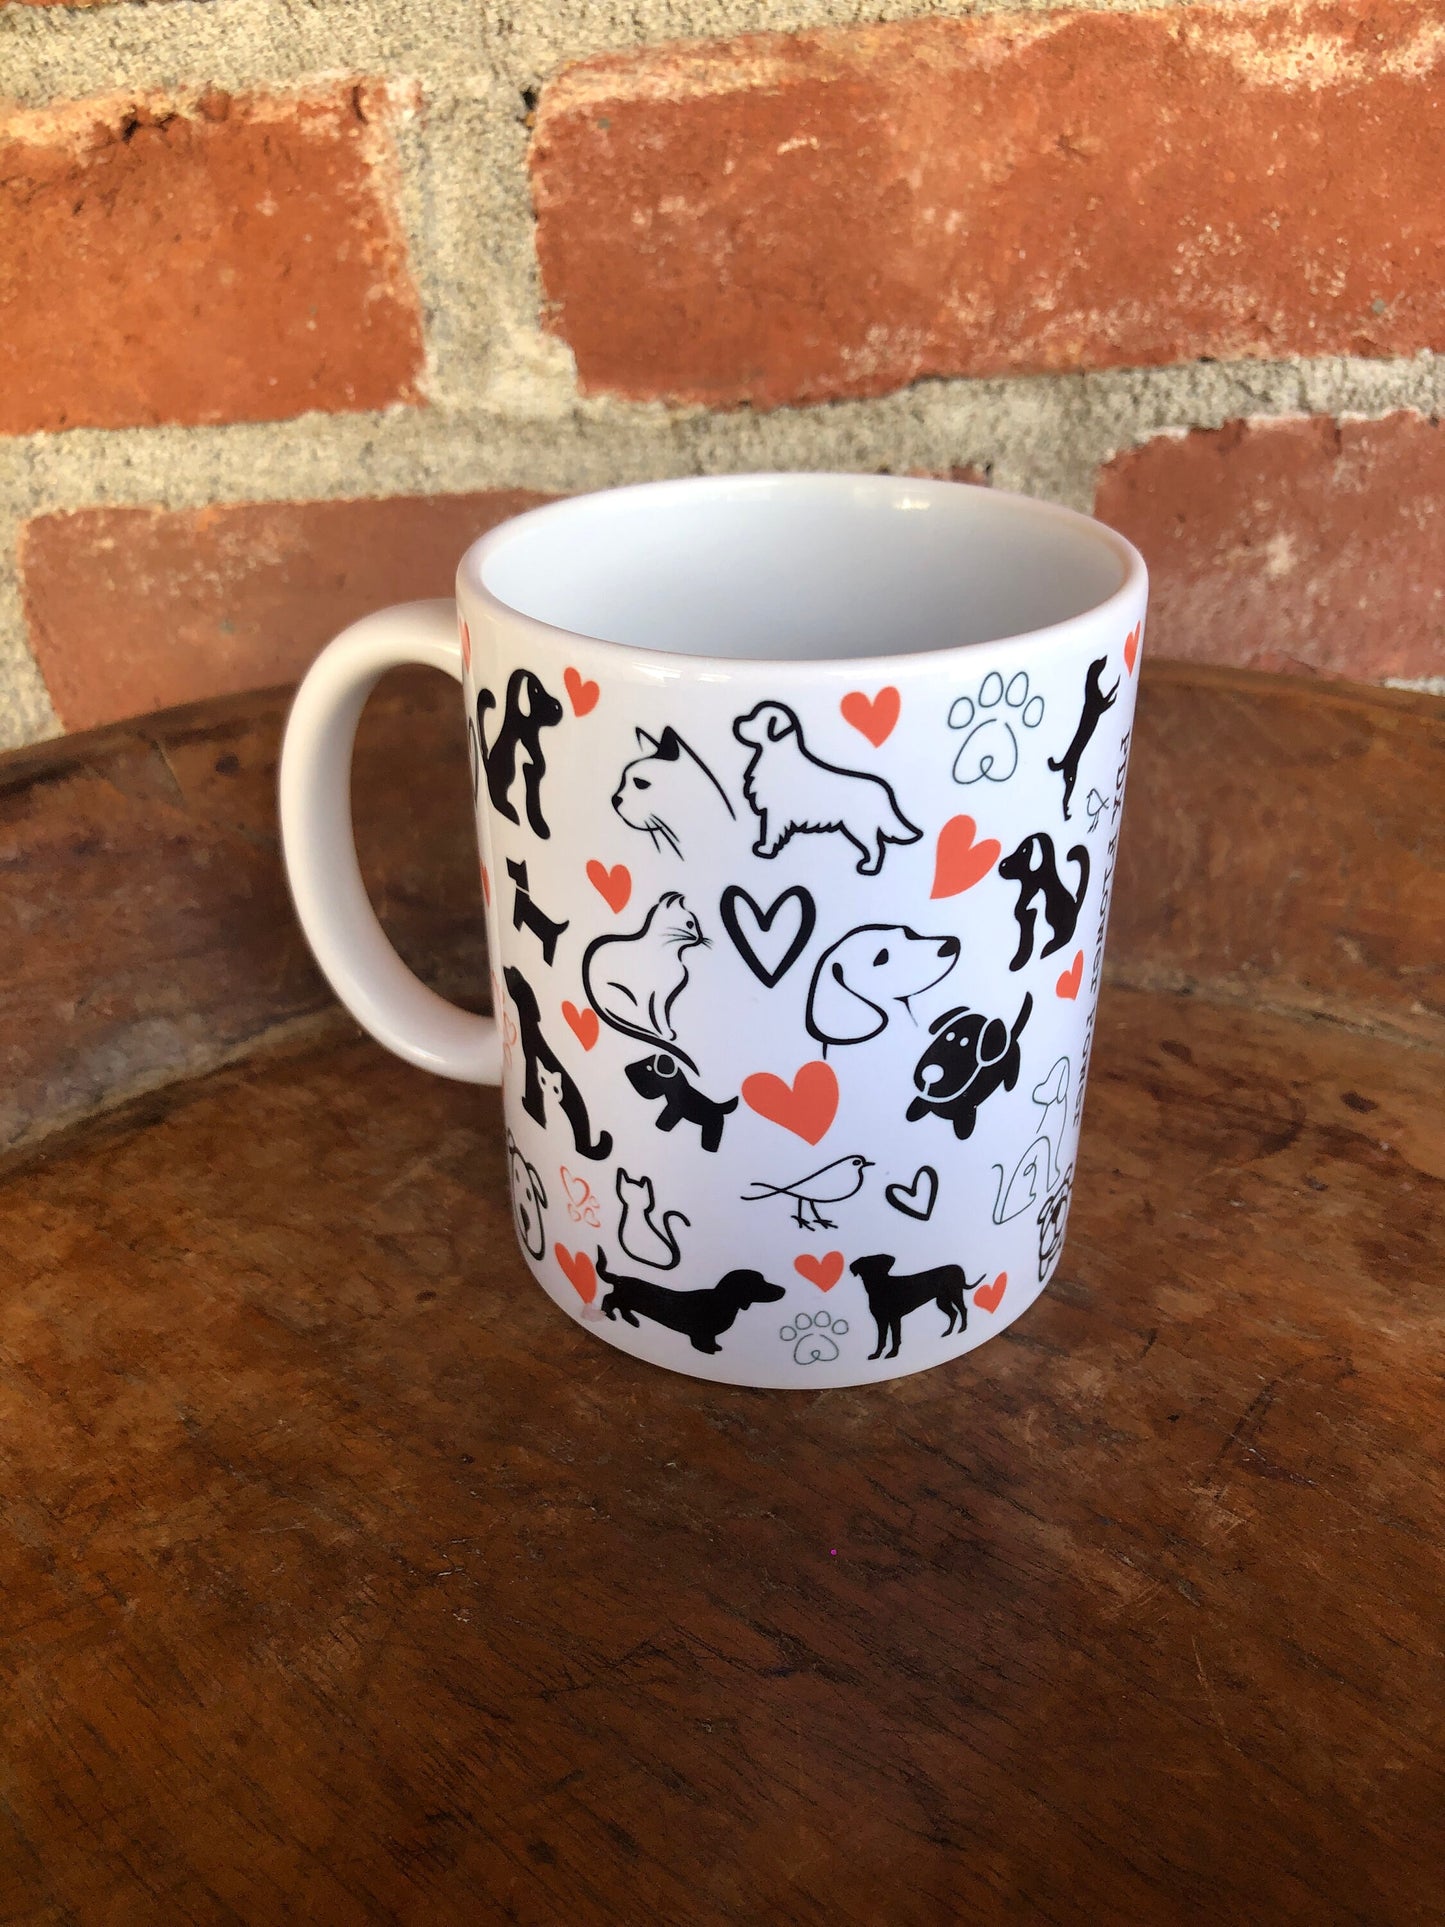 Pet mug/ Veterinarian Gift / fun pet themed mug/Dog Cat Lover gift/ animal lover/ pet themed mug  / Vet tech mug / Cats / Dog with Cat